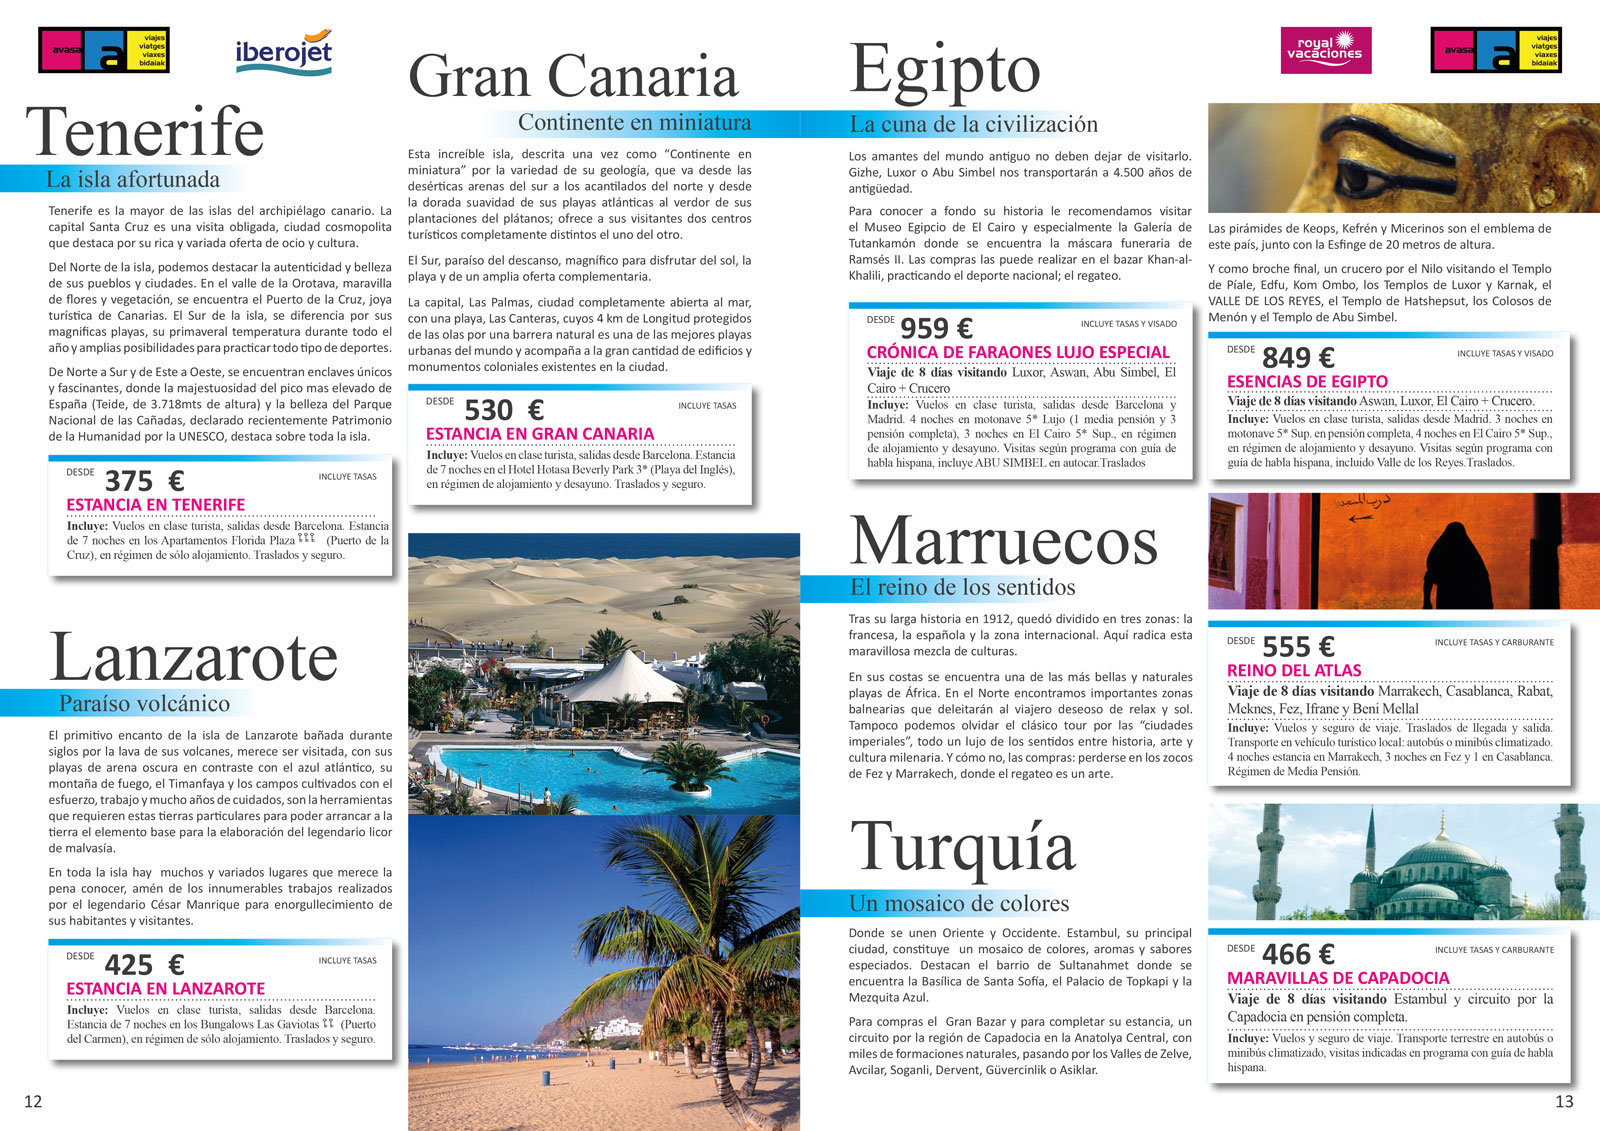 Diseño gráfico y creativo de maquetación de catálogos de viajes para agencias de viajes y tour operadores